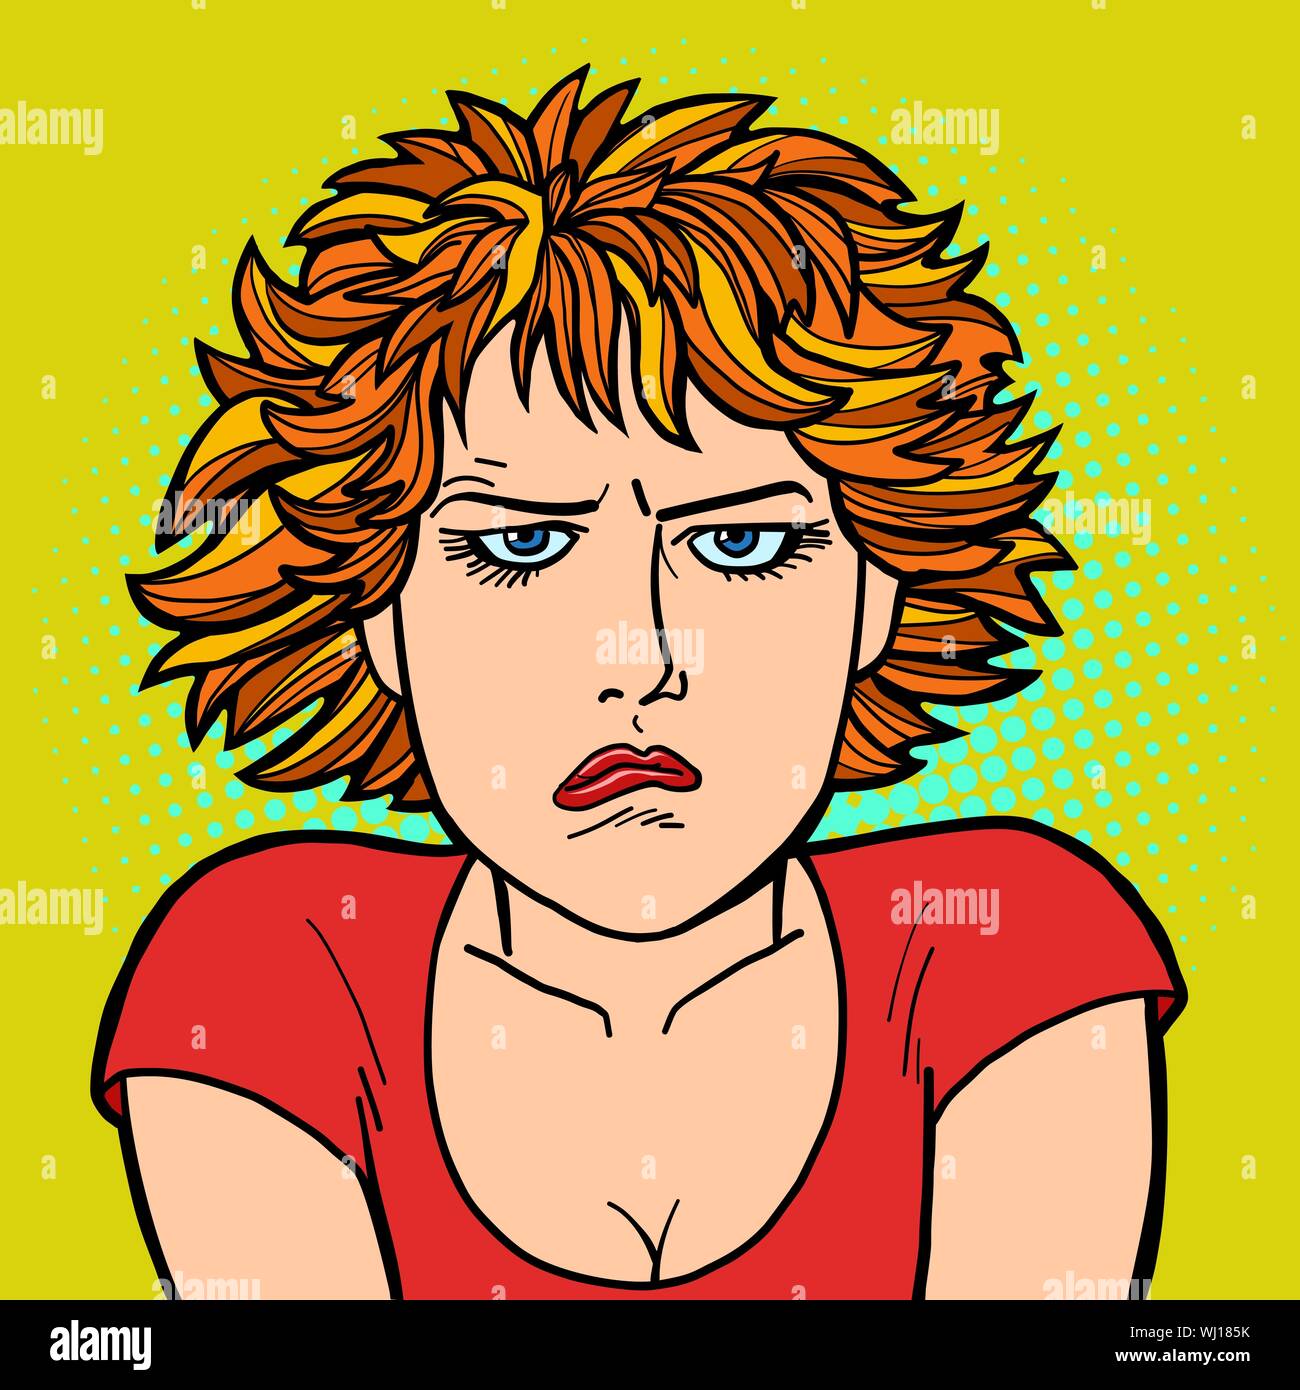 Mujer Malestar Triste Las Emociones Humanas Comic Cartoon Pop Art Retro Dibujo Ilustración 2824